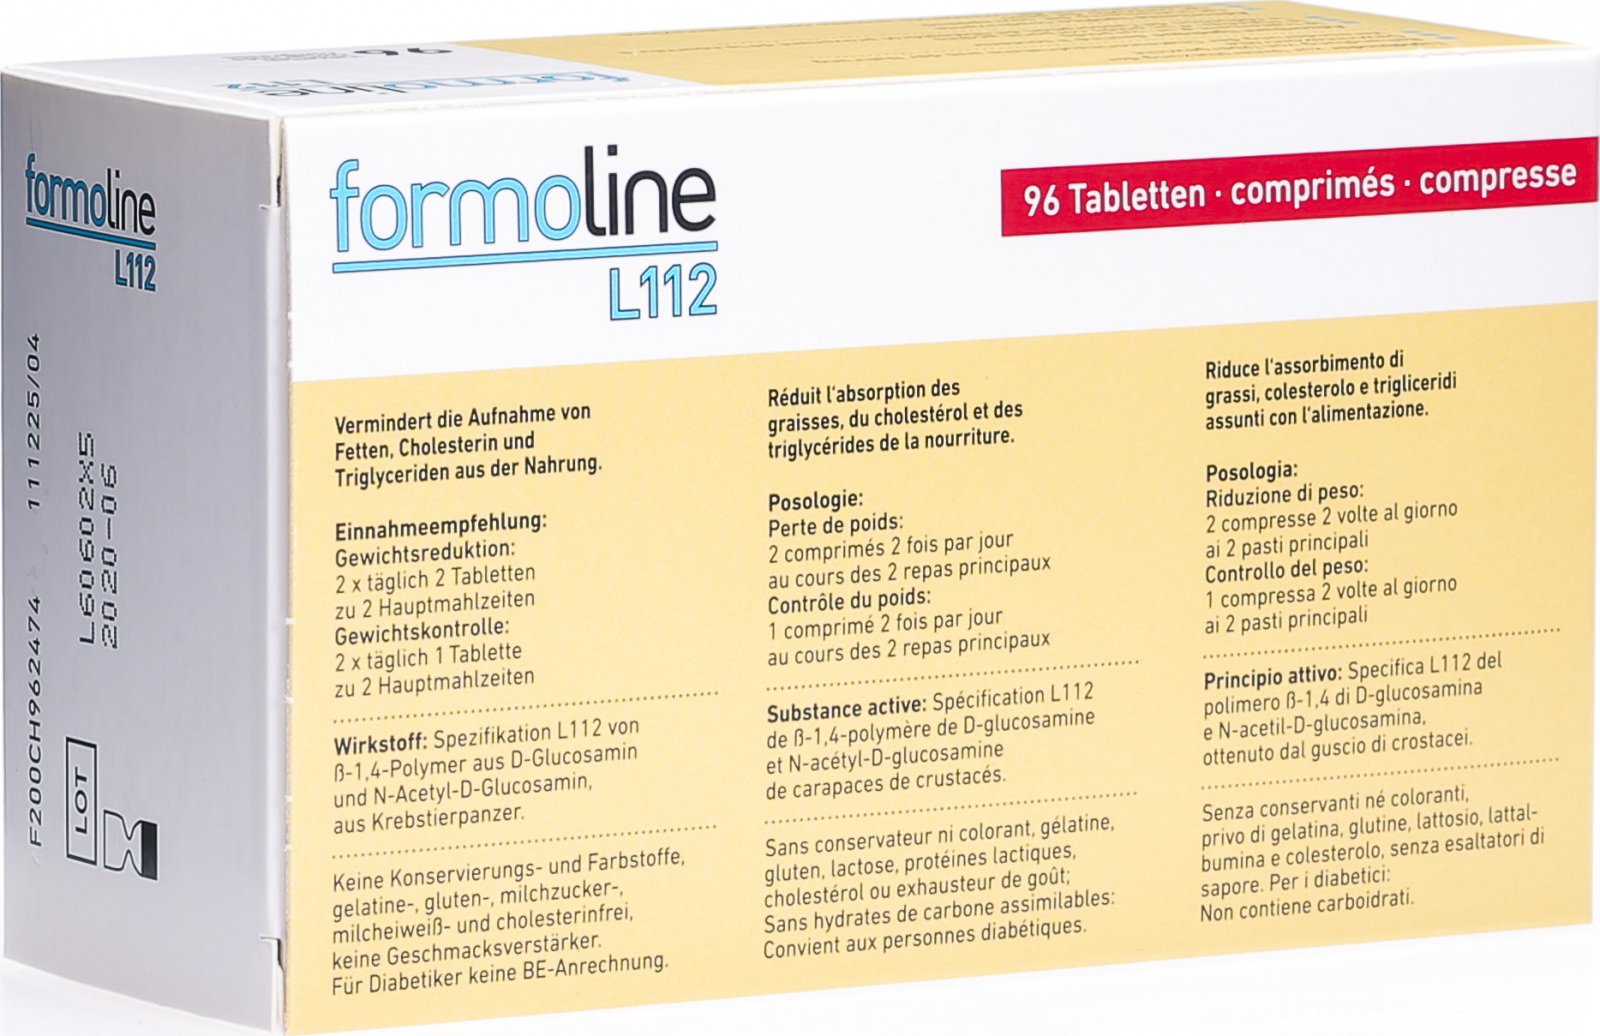 Formoline l112 kennenlernen tabletten